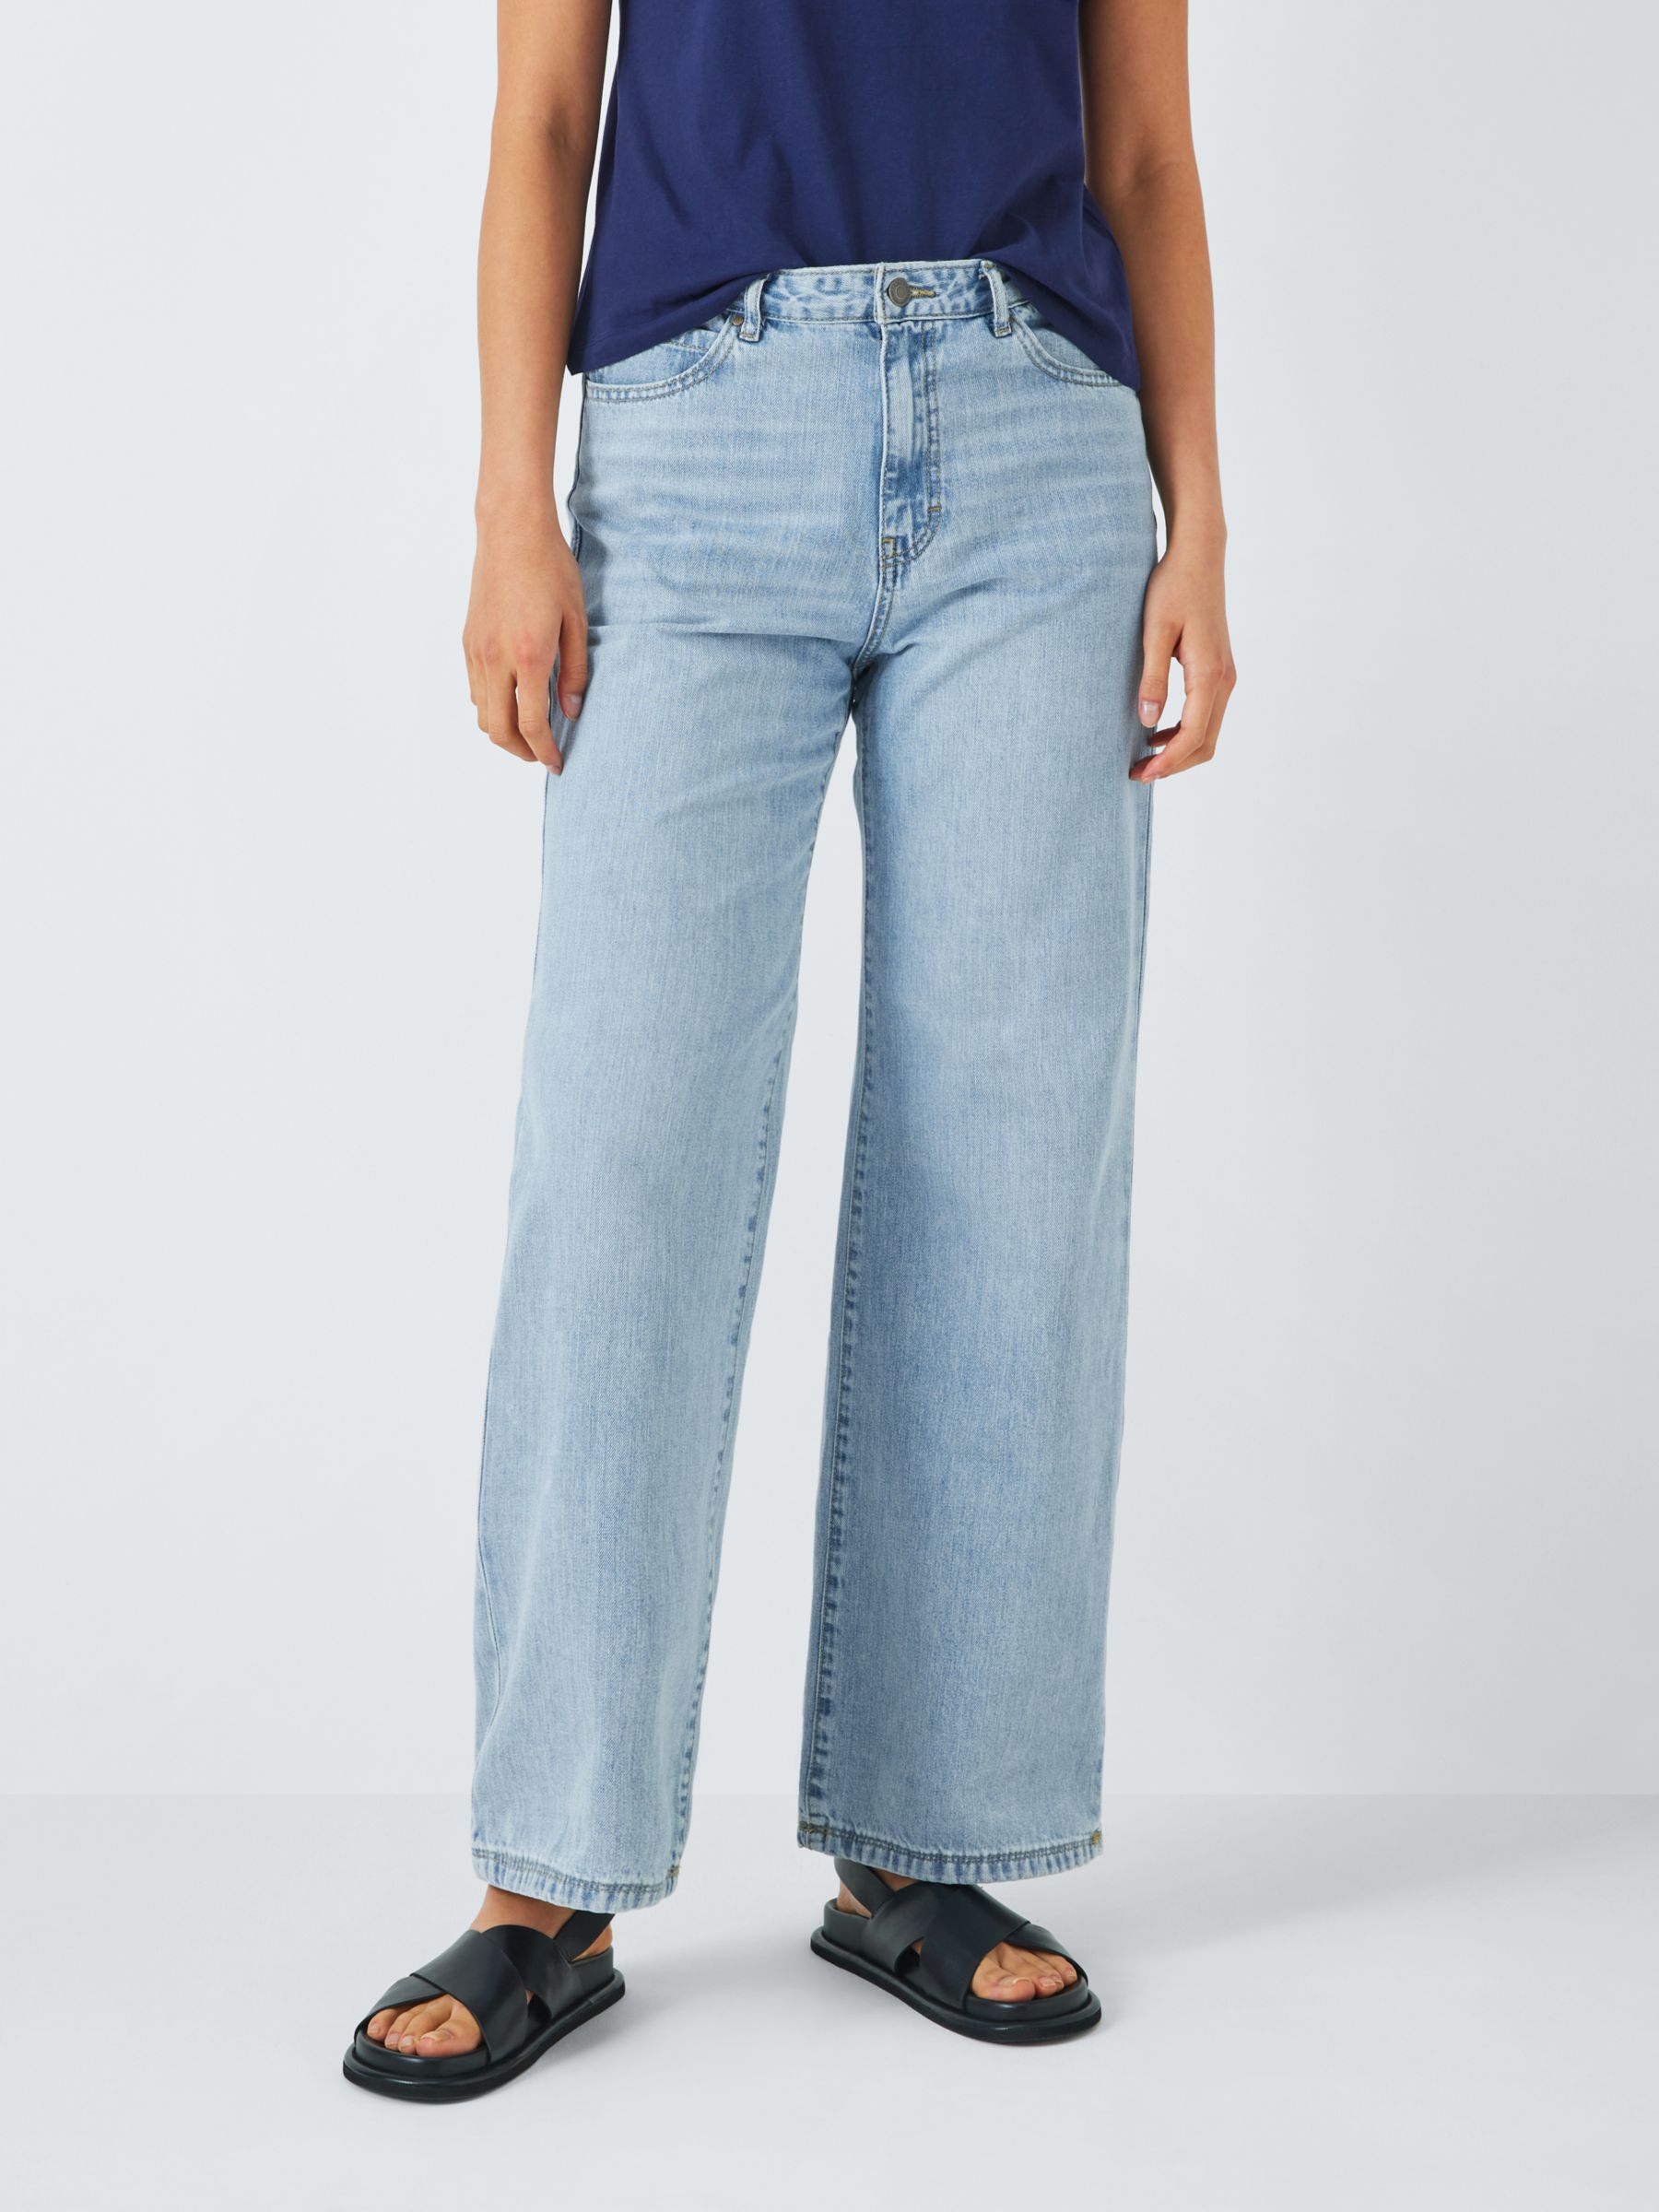 Women's 100% Cotton Jeans